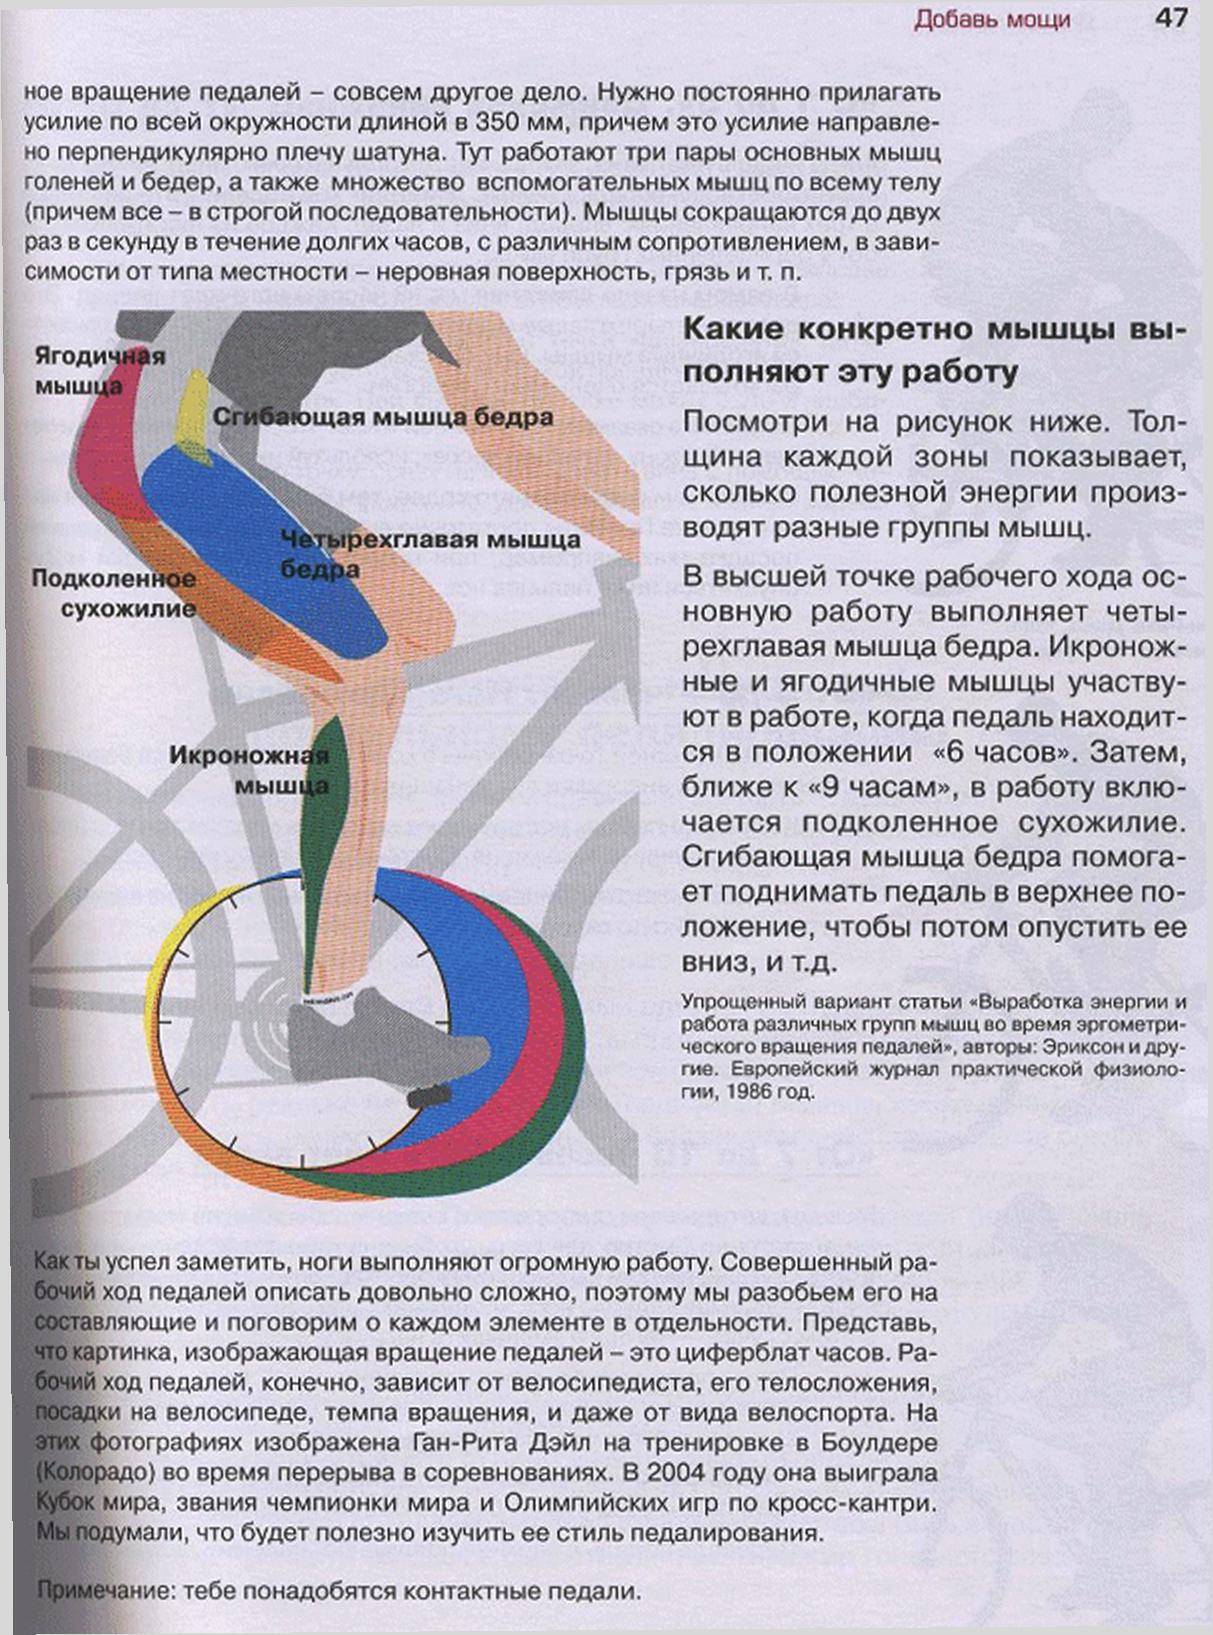 Как правильно ездить на велосипеде, чтобы похудеть? | pokatushkin.ru